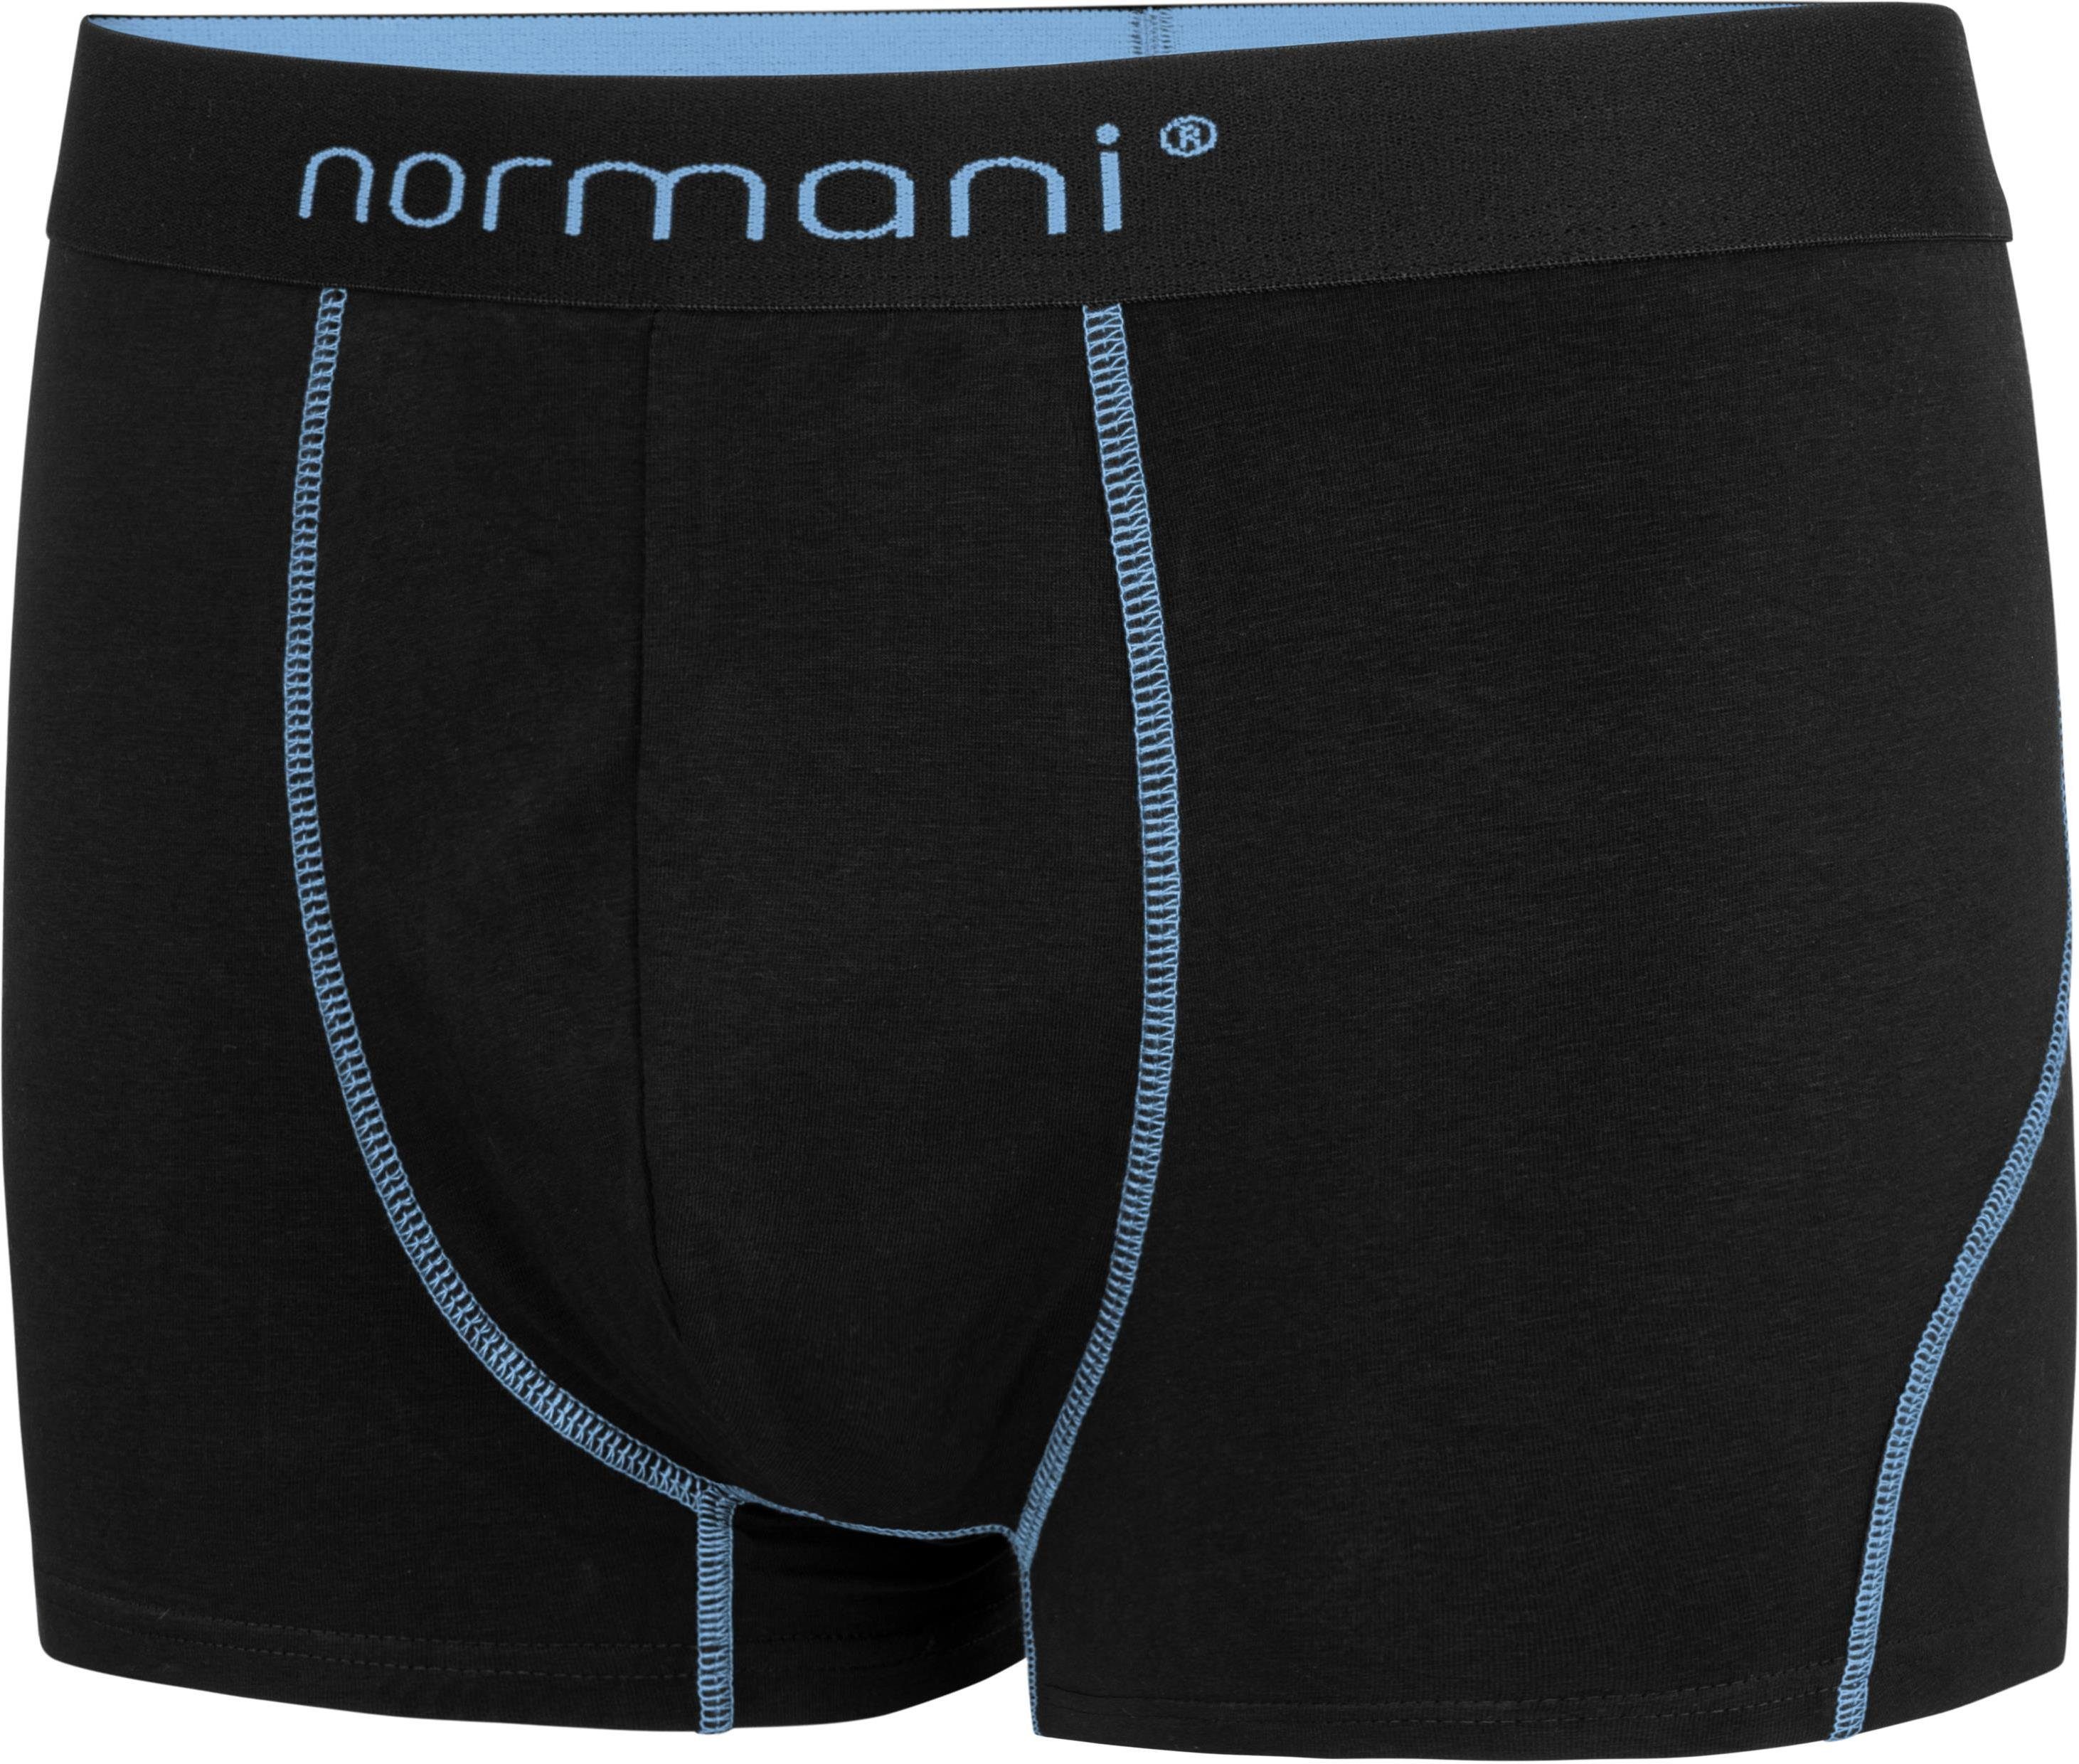 Männer für aus Boxershorts atmungsaktiver 6 Boxershorts Baumwolle normani Baumwolle Unterhose Hellblau weiche aus